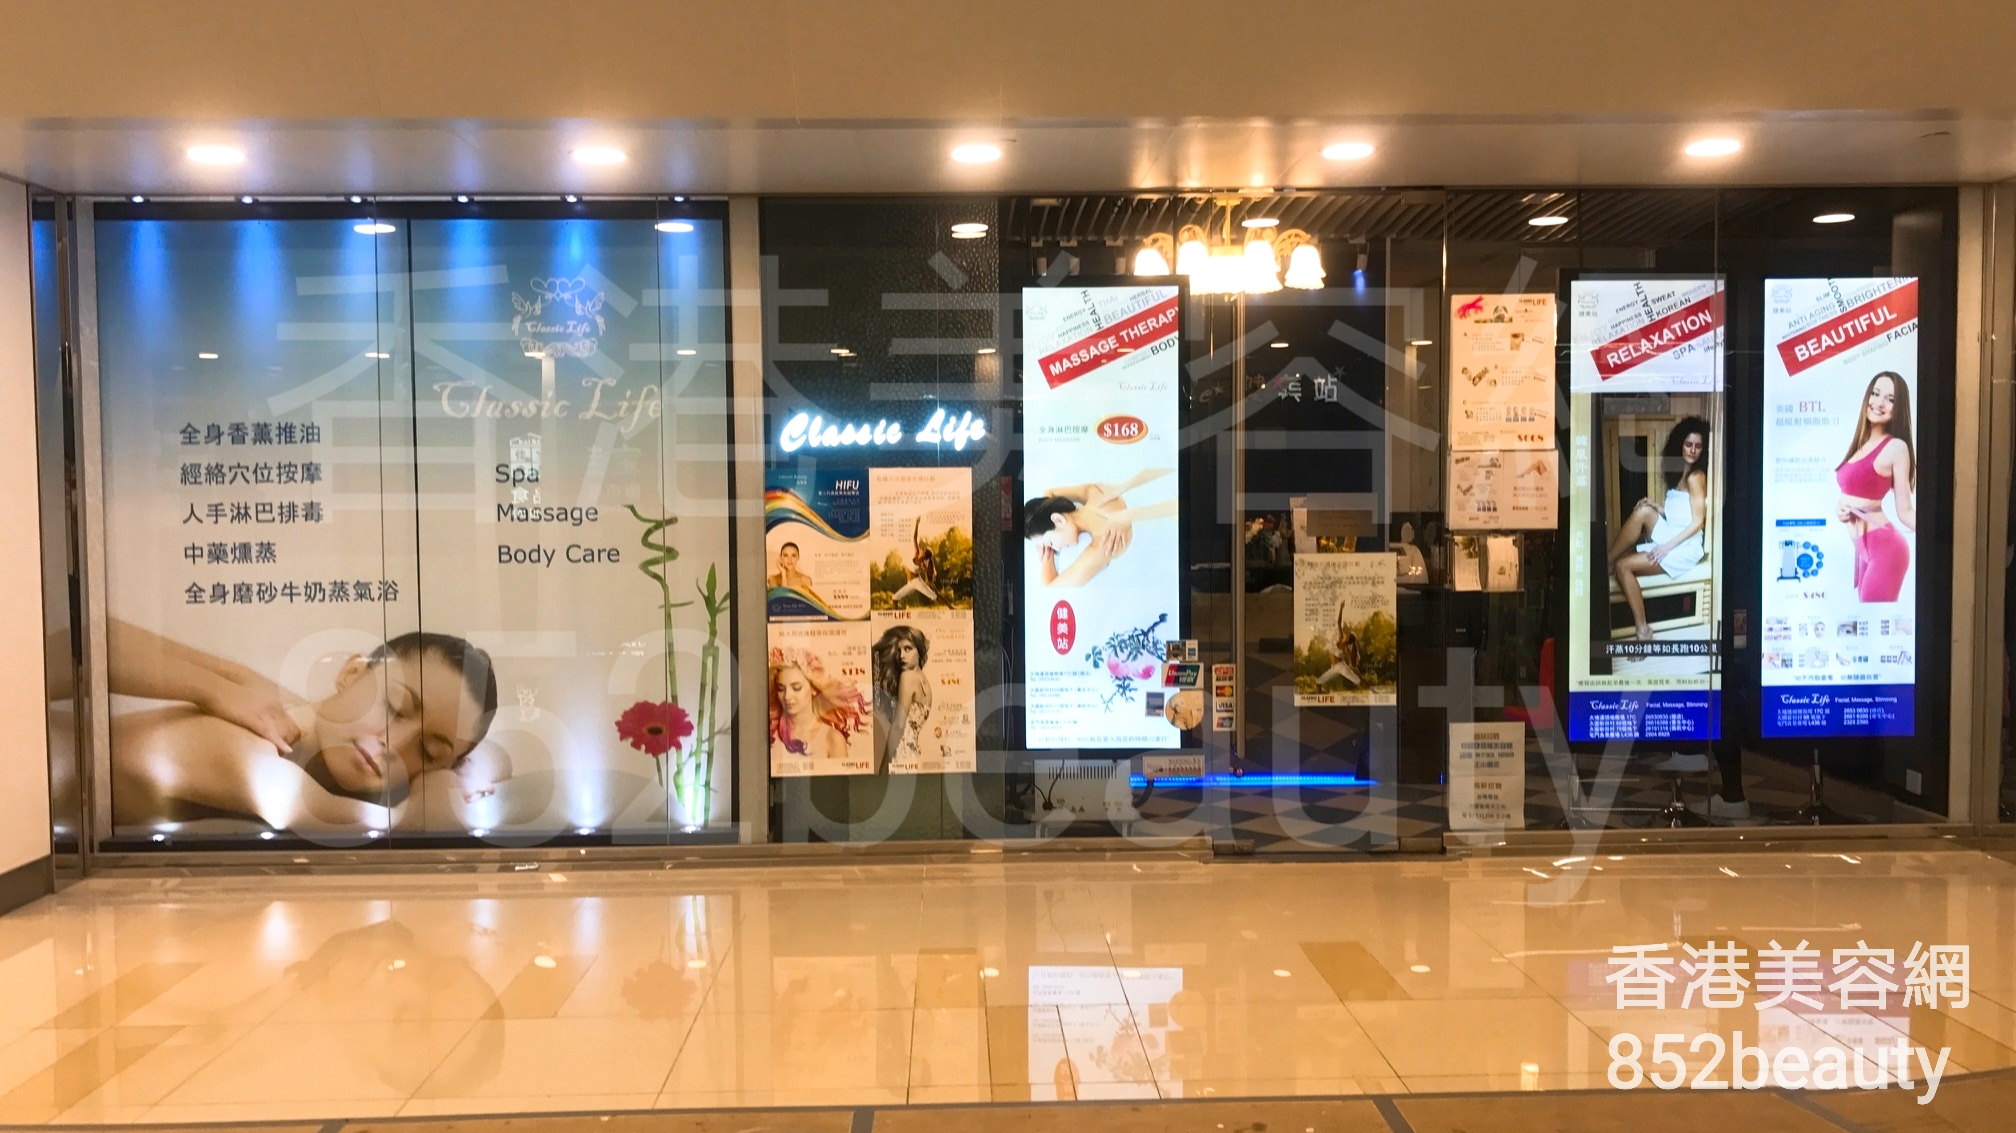 香港美容網 Hong Kong Beauty Salon 美容院 / 美容師: Classic Life 健美站 (大埔總店)